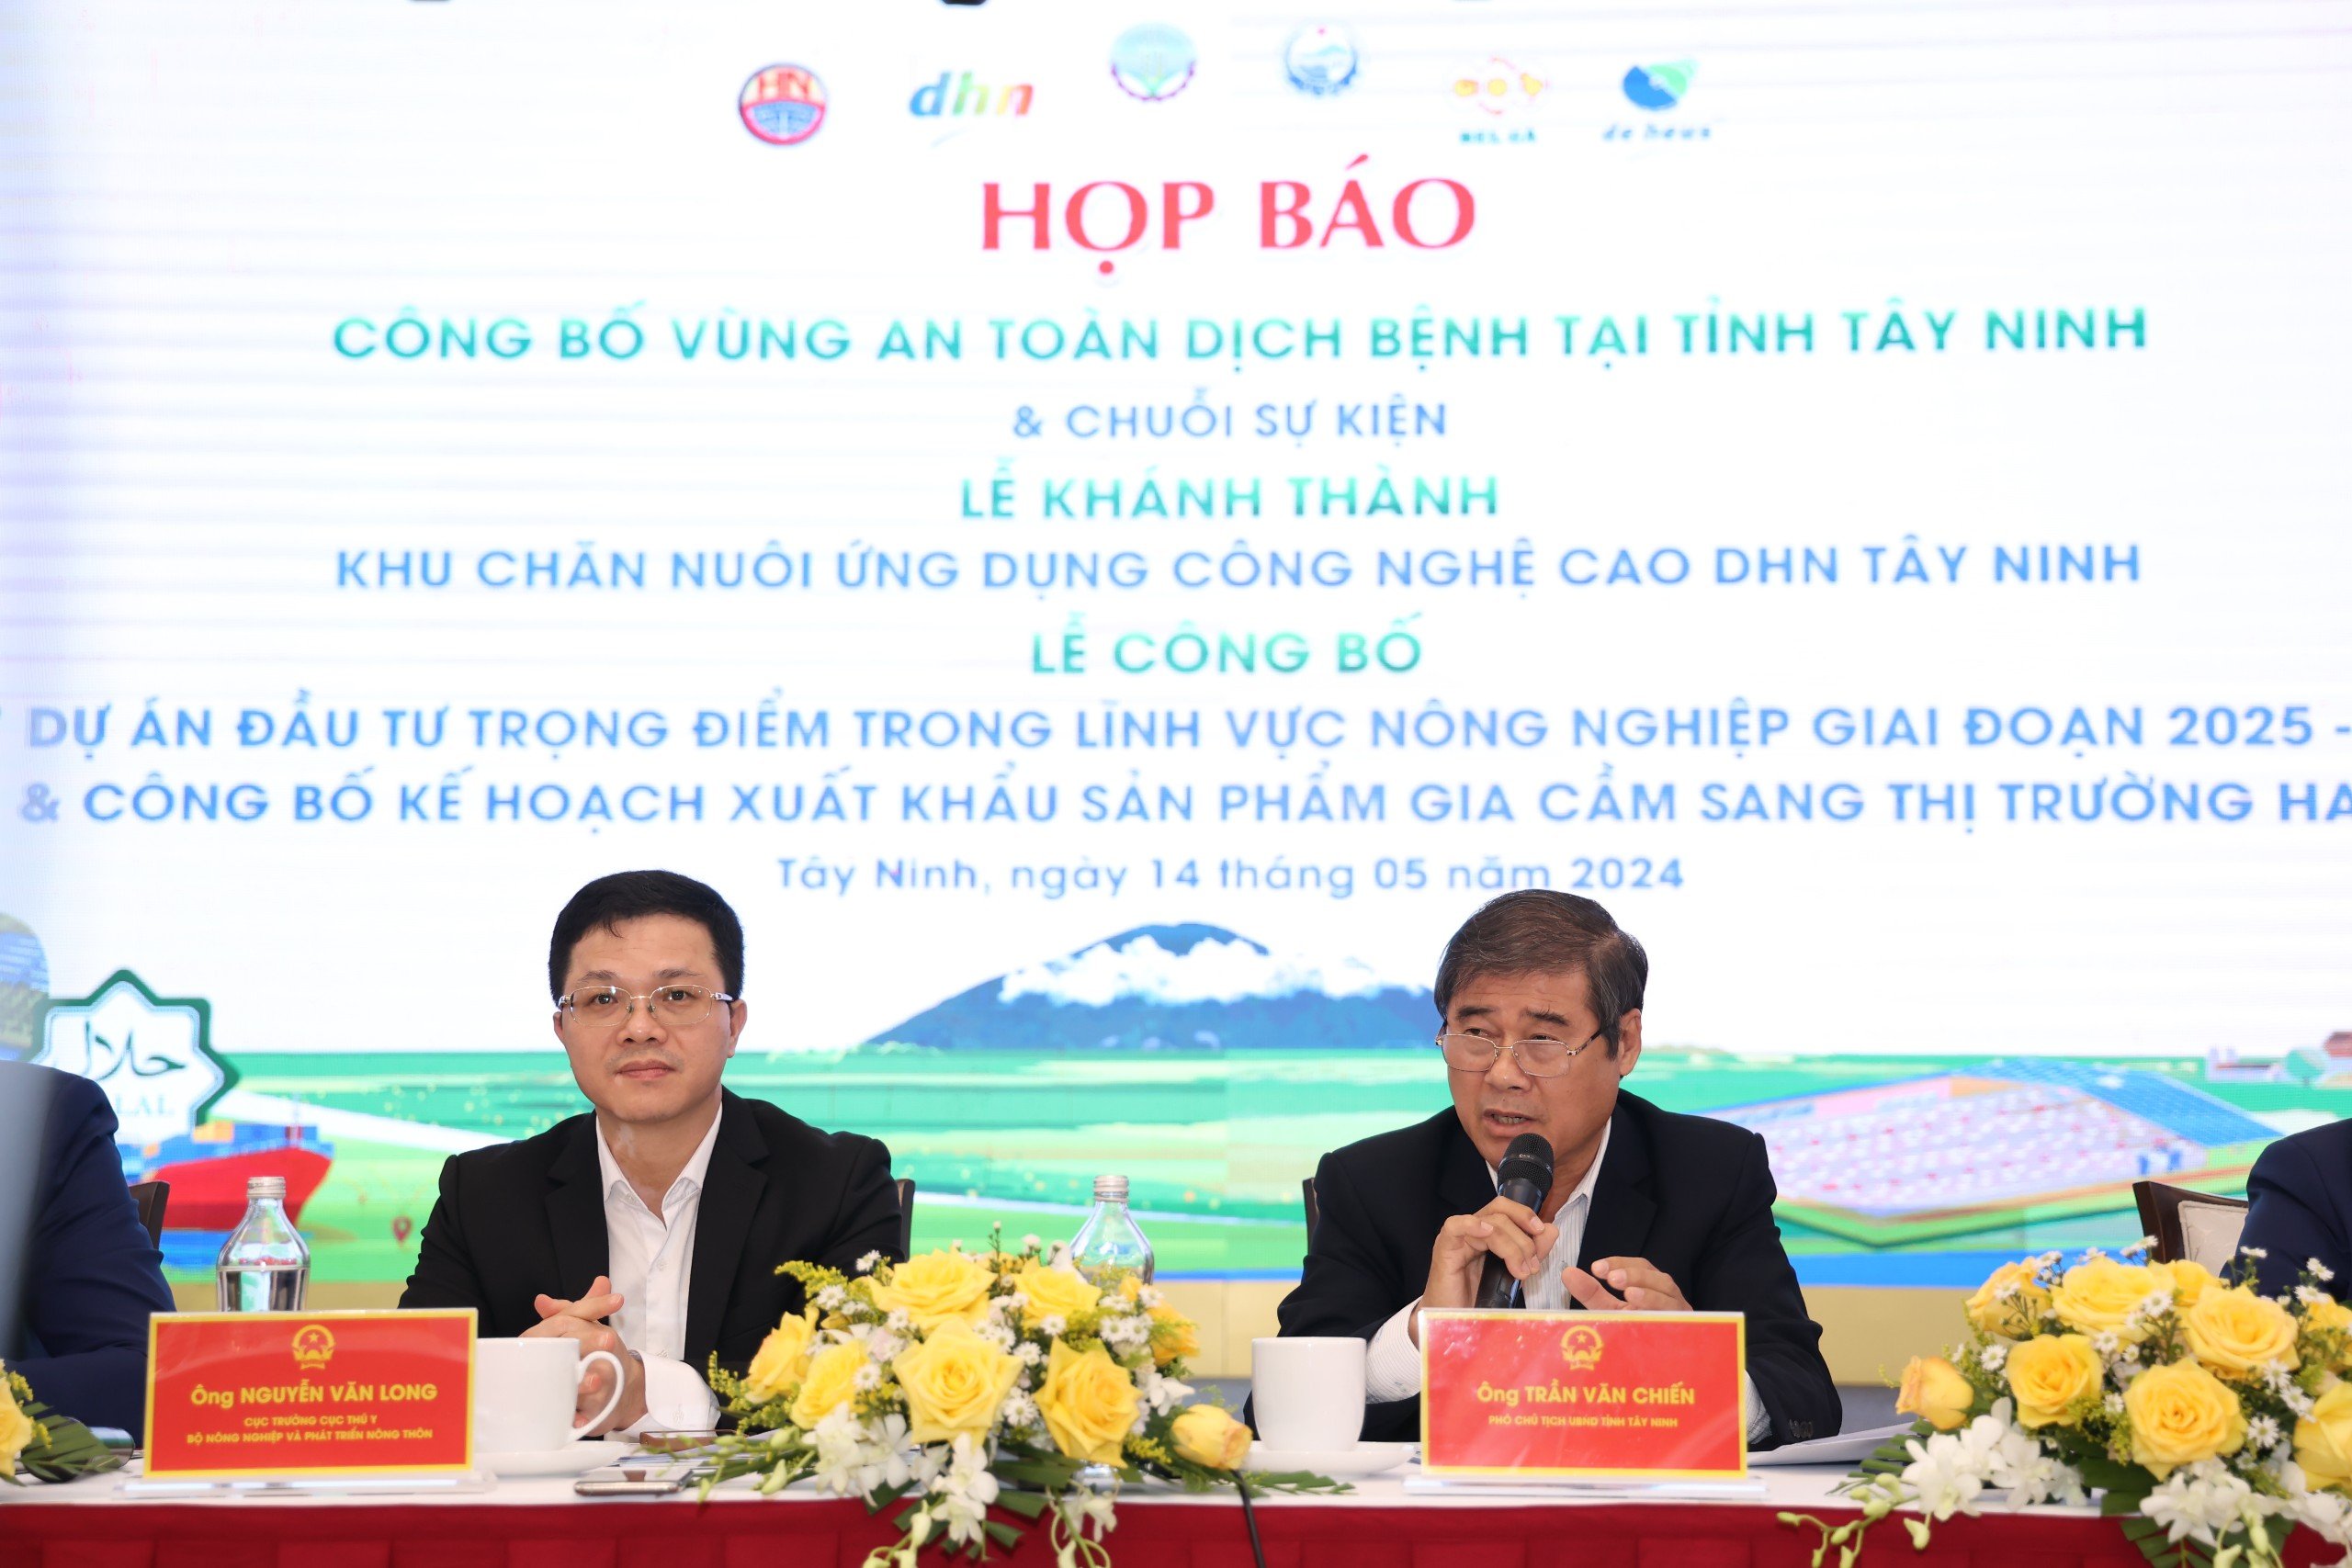 Tây Ninh chuẩn bị đón 1.000 khách dự chuỗi sự kiện lớn ngành nông nghiệp và công bố vùng an toàn dịch bệnh- Ảnh 3.